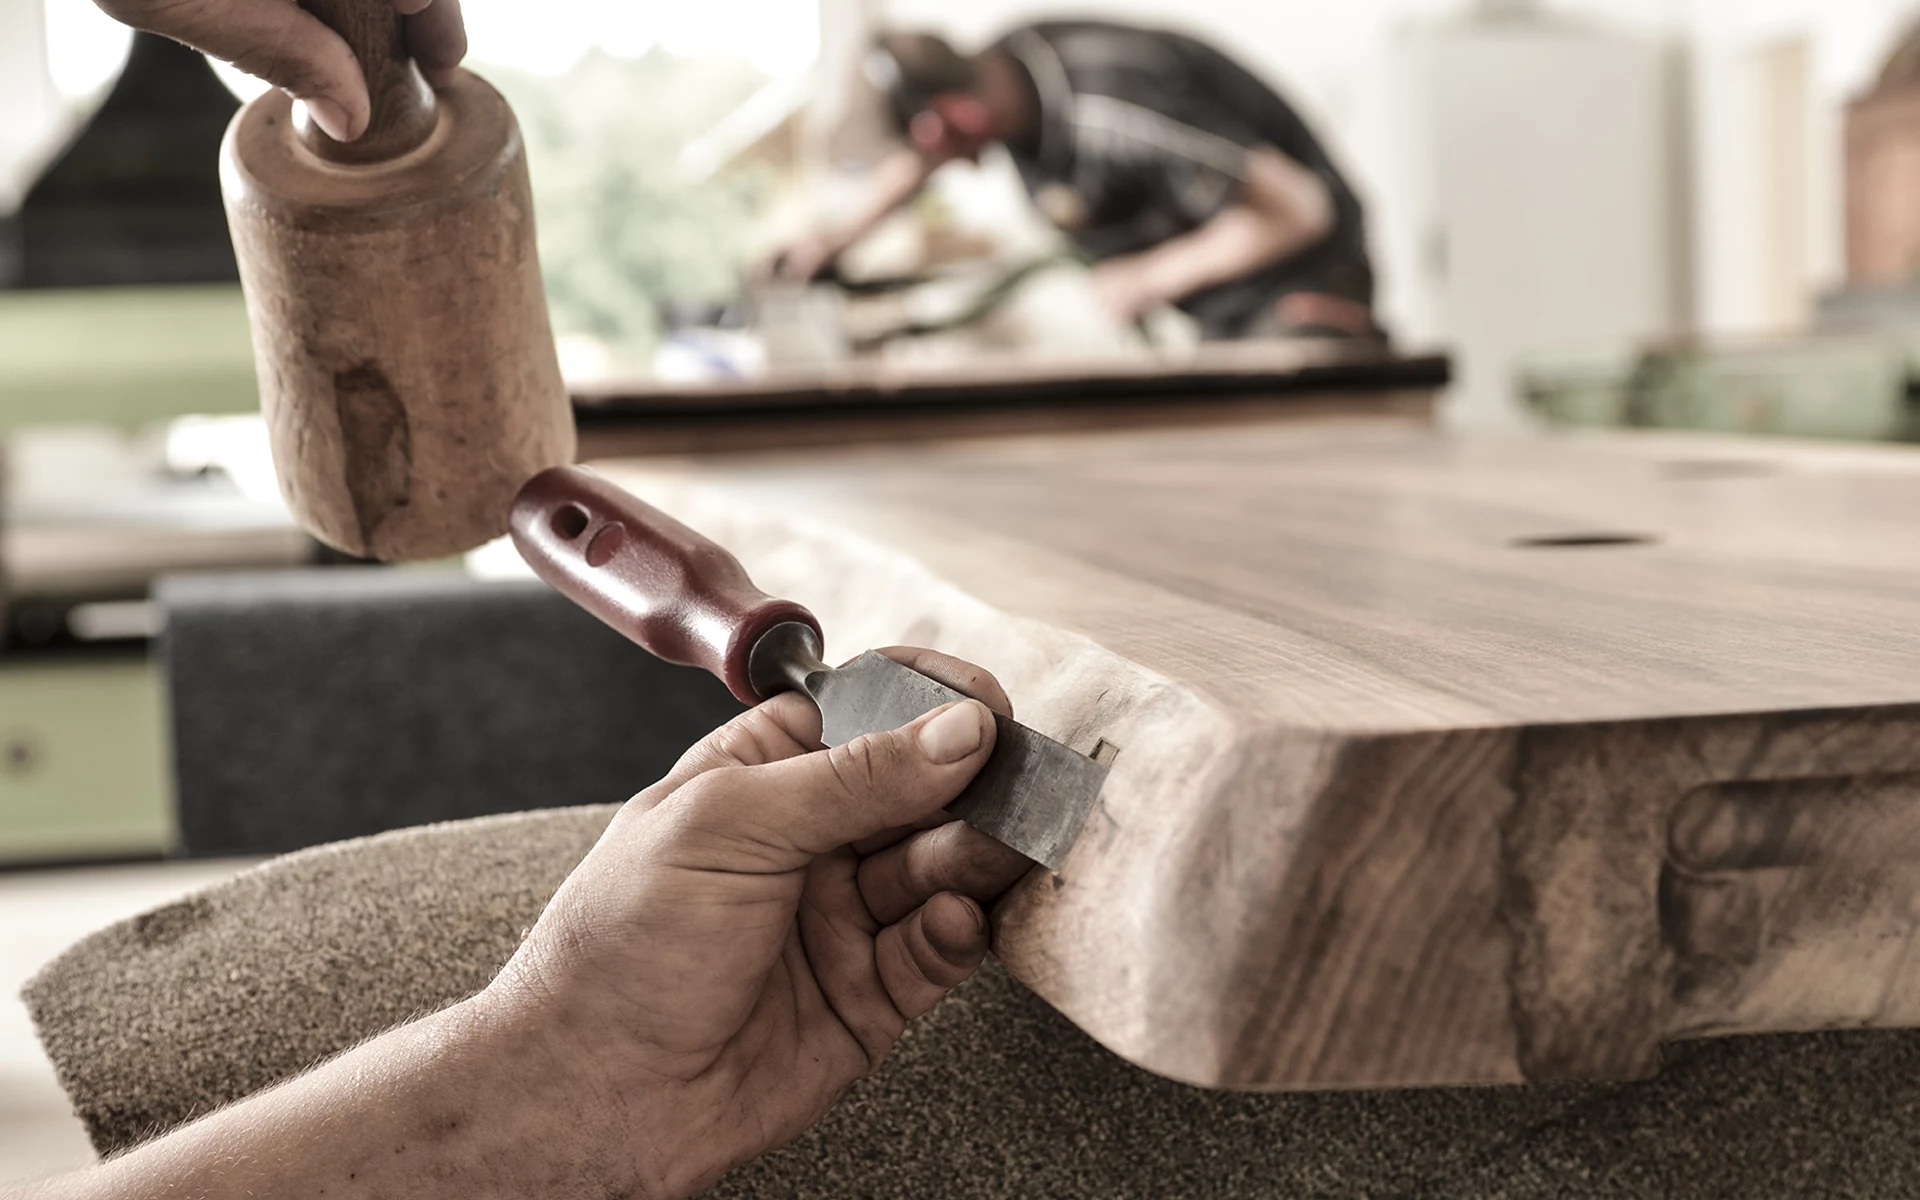 Con molto lavoro manuale, competenza e sensibilità, Stammdesign crea prodotti unici in legno